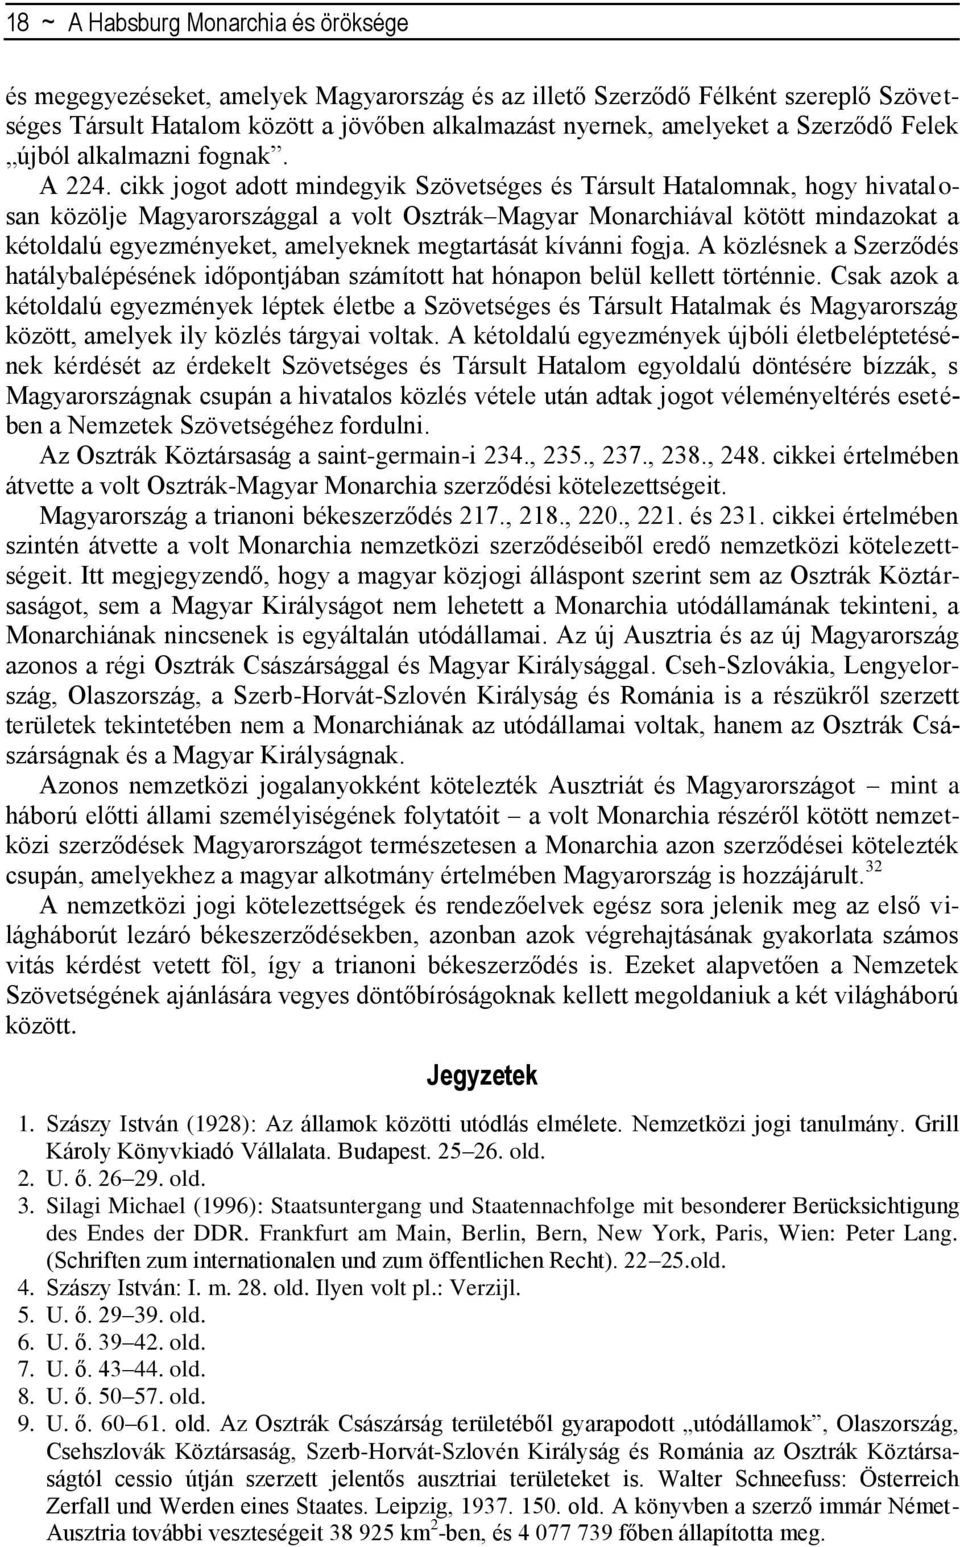 cikk jogot adott mindegyik Szövetséges és Társult Hatalomnak, hogy hivatalosan közölje Magyarországgal a volt Osztrák Magyar Monarchiával kötött mindazokat a kétoldalú egyezményeket, amelyeknek